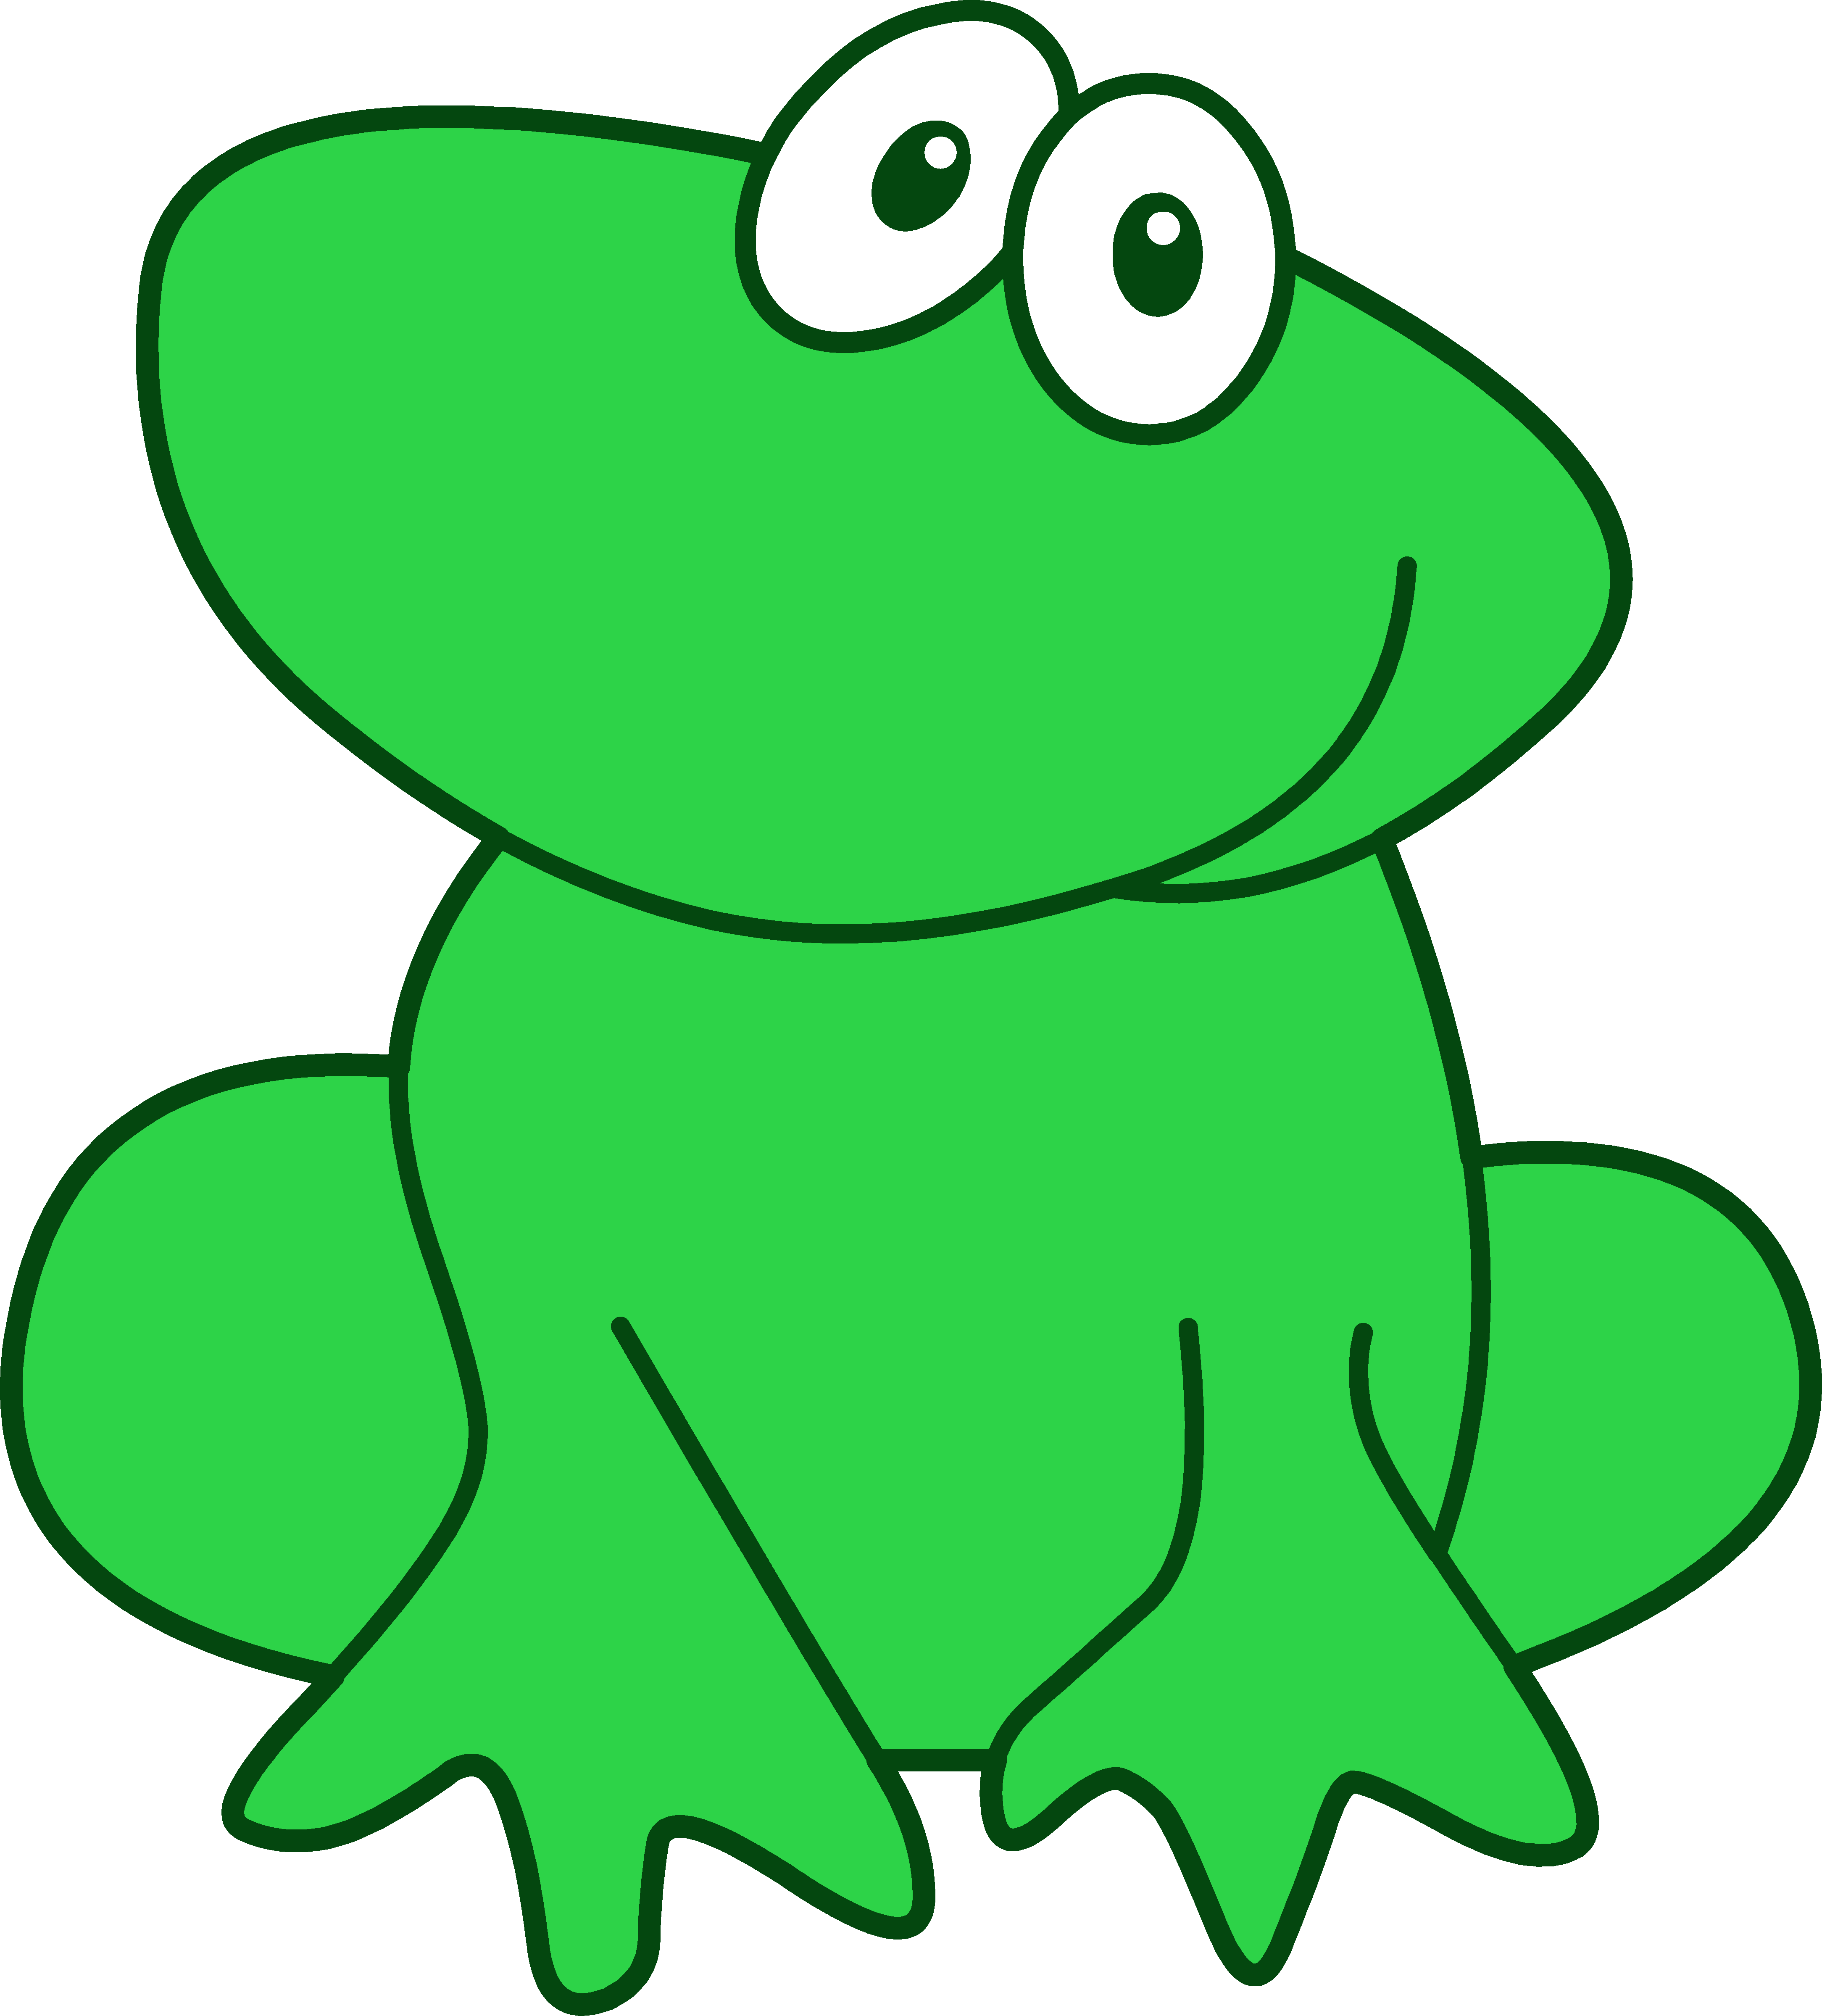 Smiling cartoon frog free image download